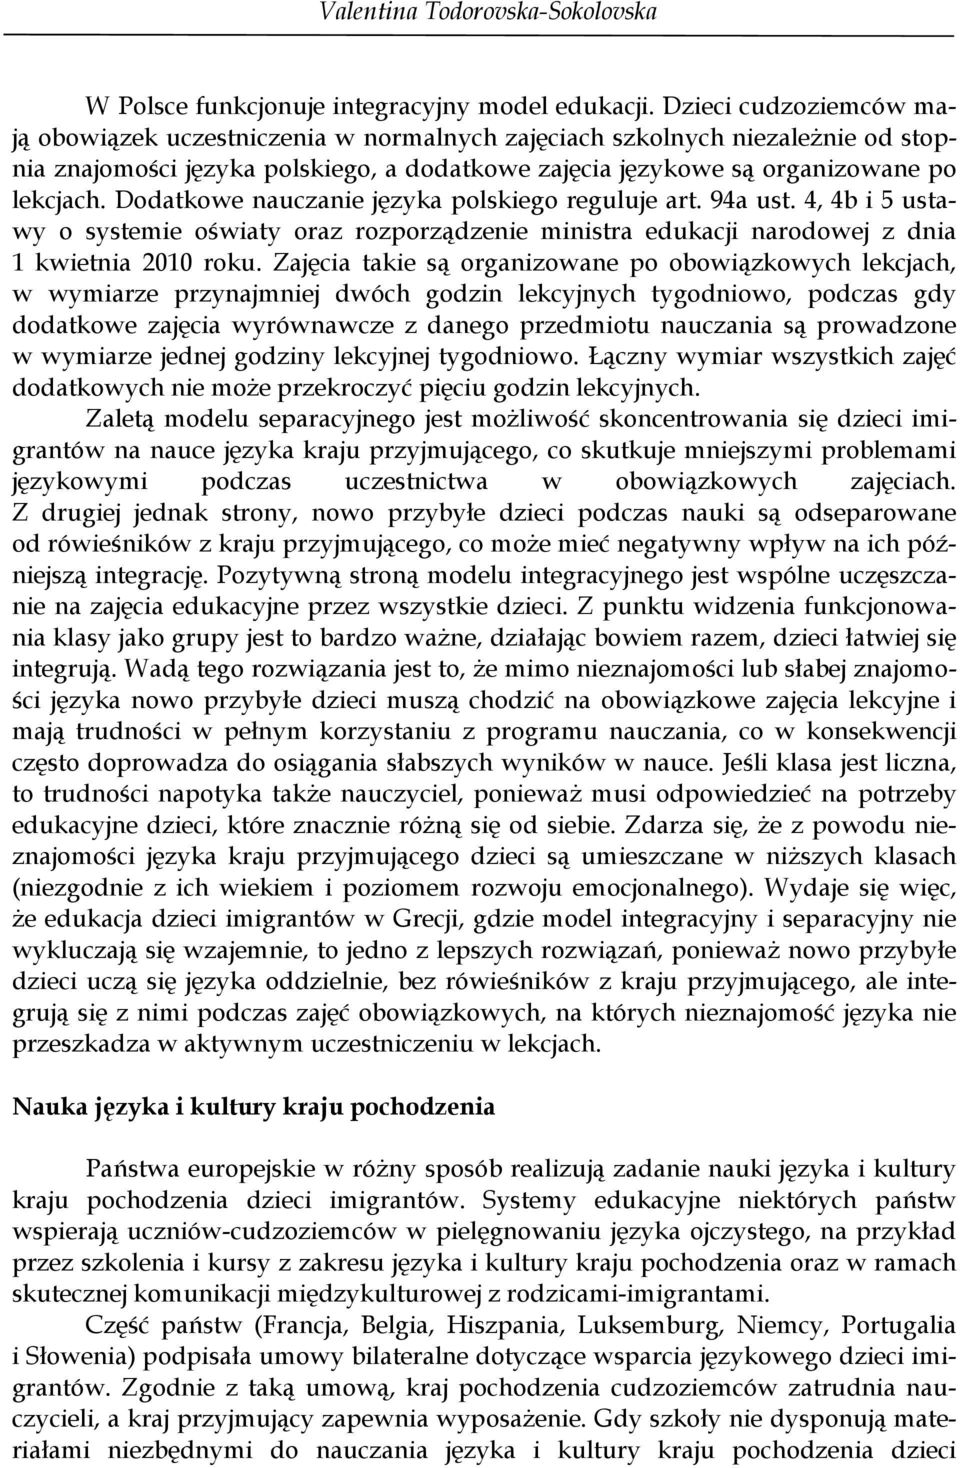 Dodatkowe nauczanie języka polskiego reguluje art. 94a ust. 4, 4b i 5 ustawy o systemie oświaty oraz rozporządzenie ministra edukacji narodowej z dnia 1 kwietnia 2010 roku.